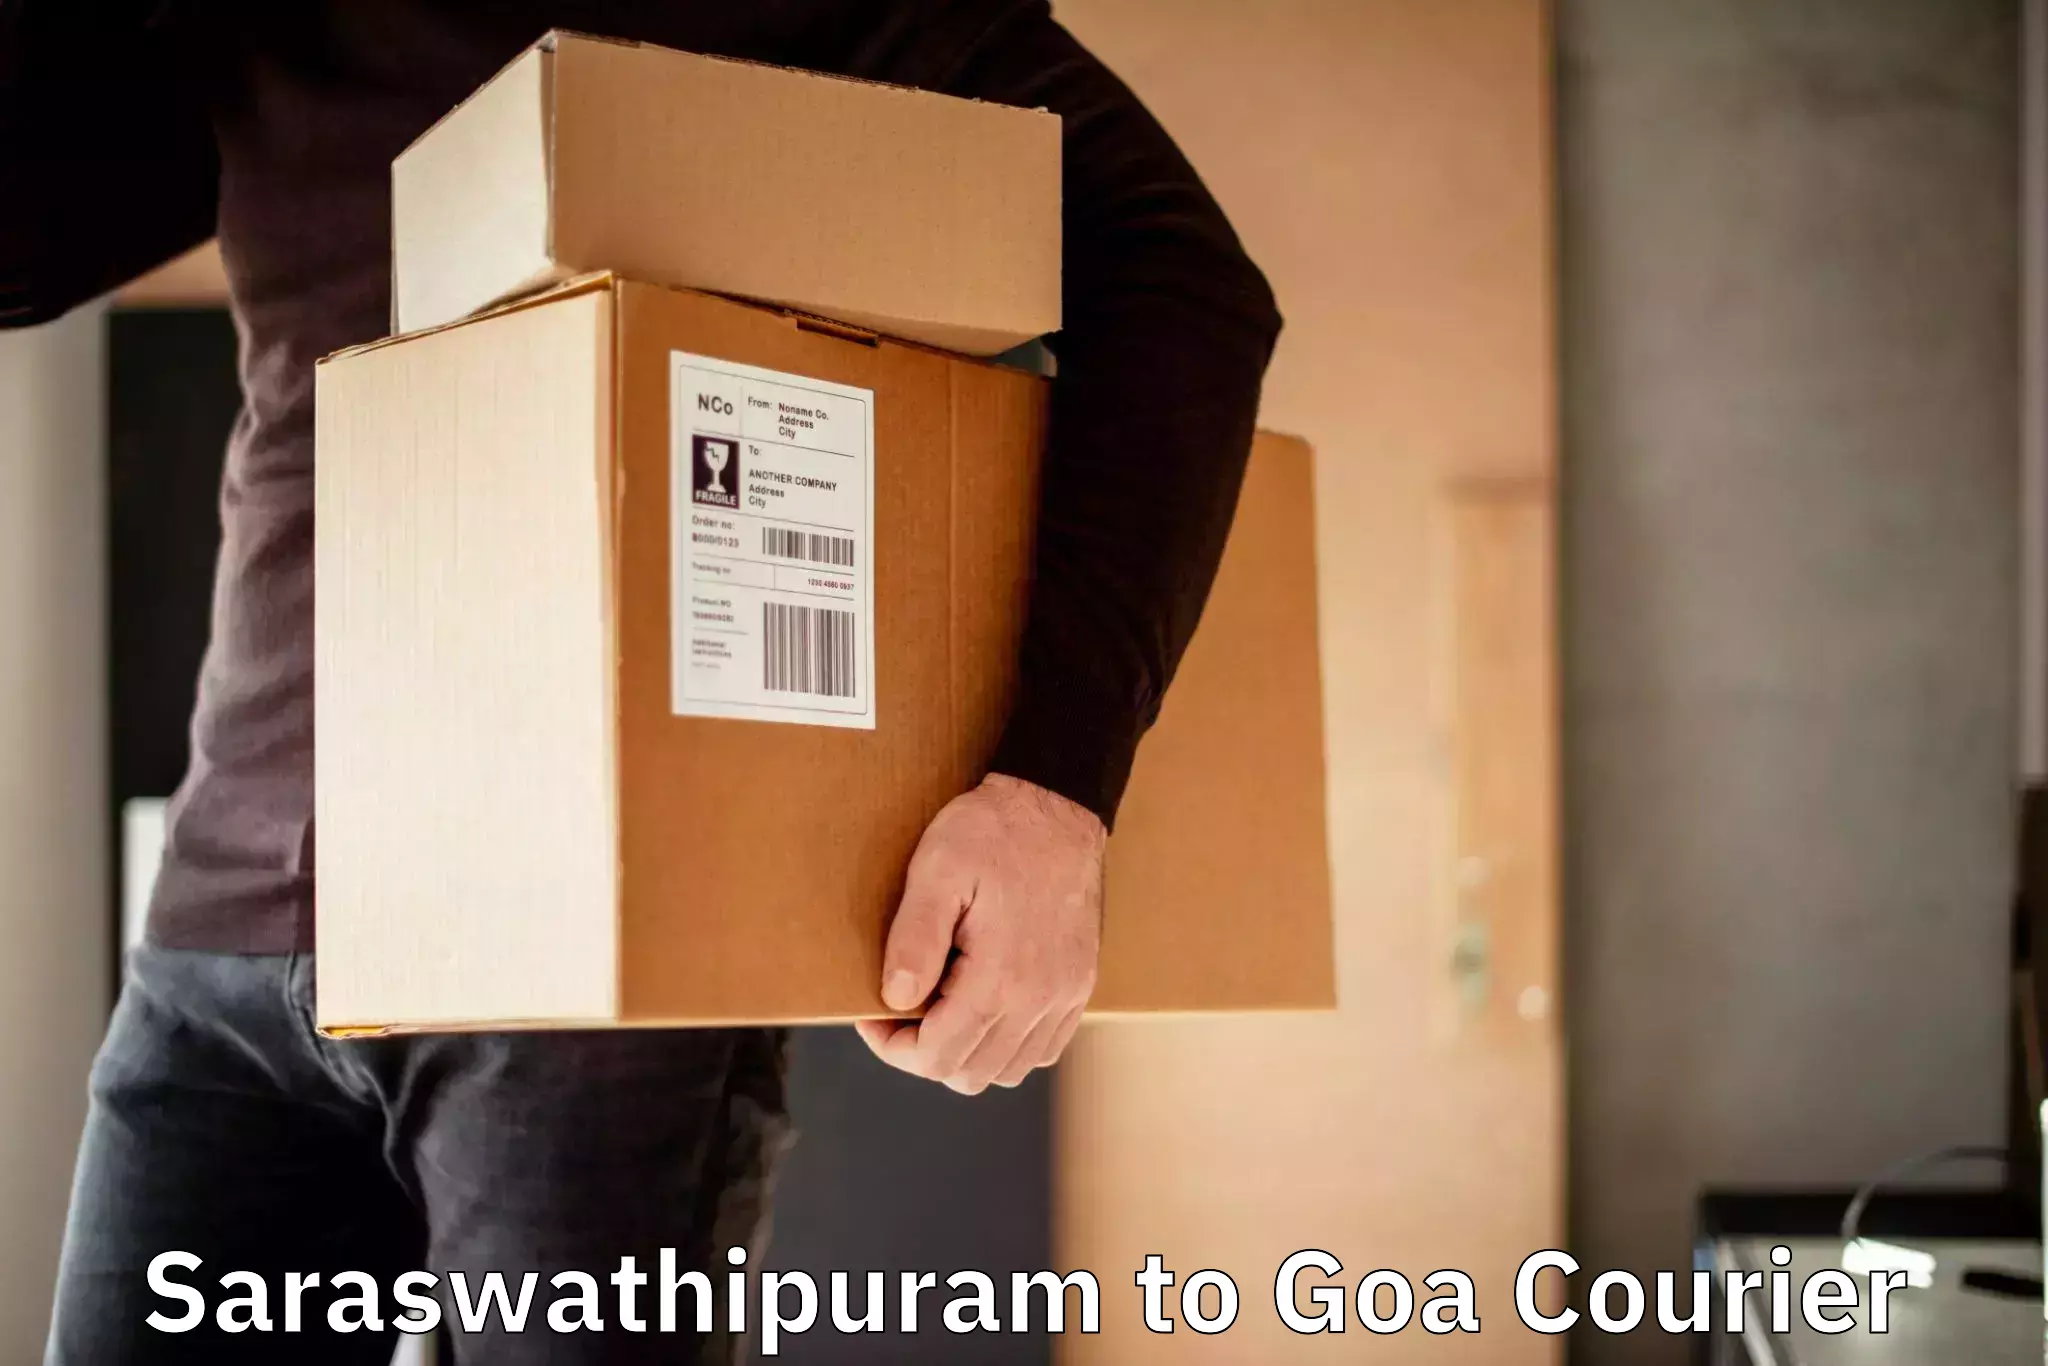 Global courier networks Saraswathipuram to Ponda